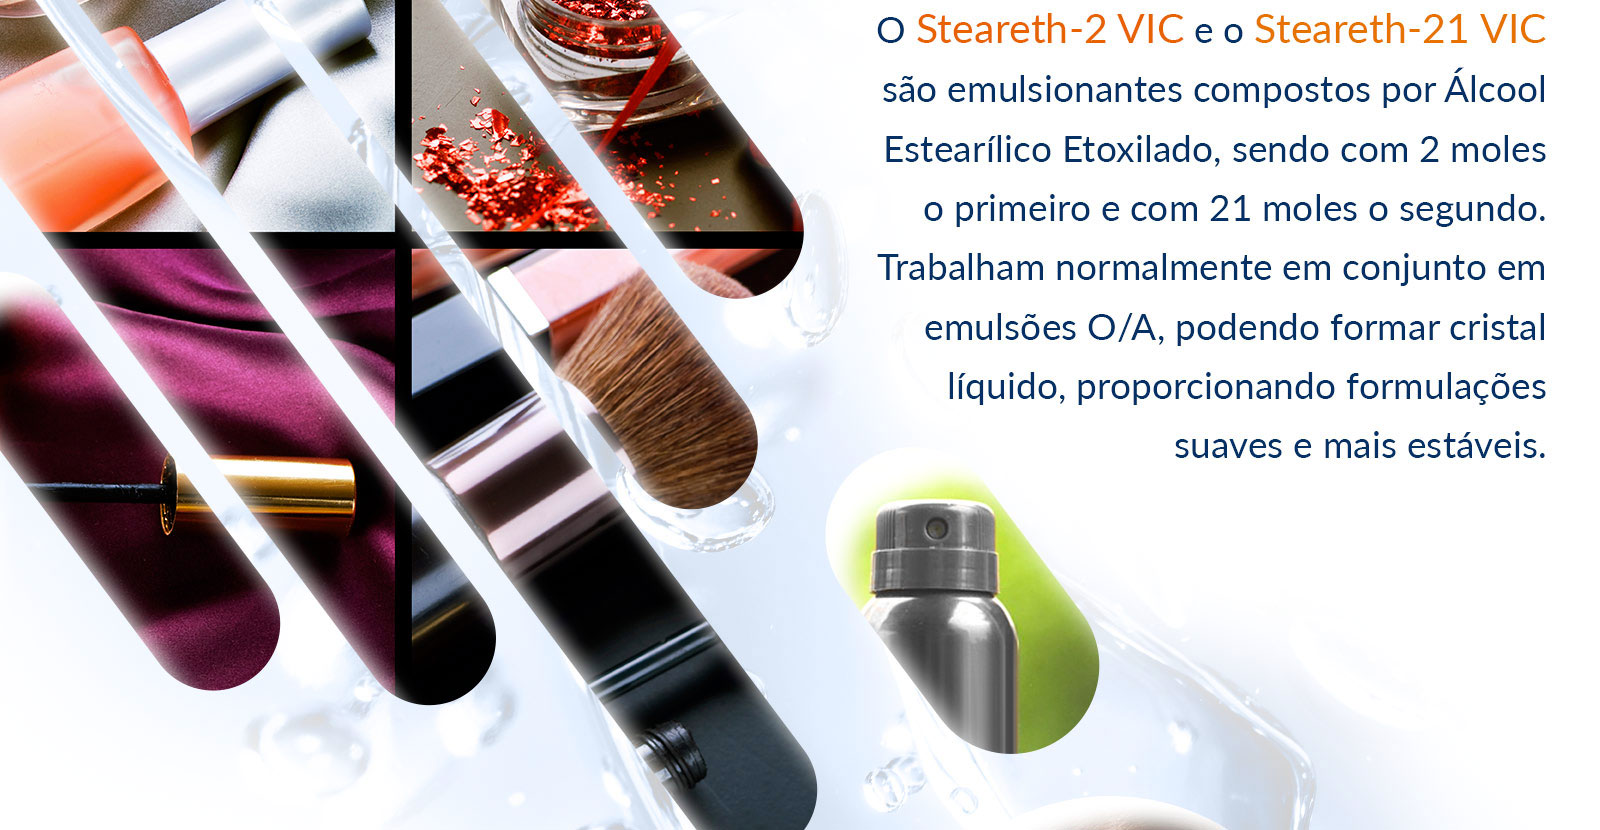 O Steareth-2 VIC e o Steareth-21 VIC são emulsionantes compostos por Álcool Estearílico Etoxilado, sendo com 2 moles o primeiro e com 21 moles o segundo. Trabalham normalmente em conjunto em emulsões O/A, podendo formar cristal líquido, proporcionando formulações suaves e mais estáveis.